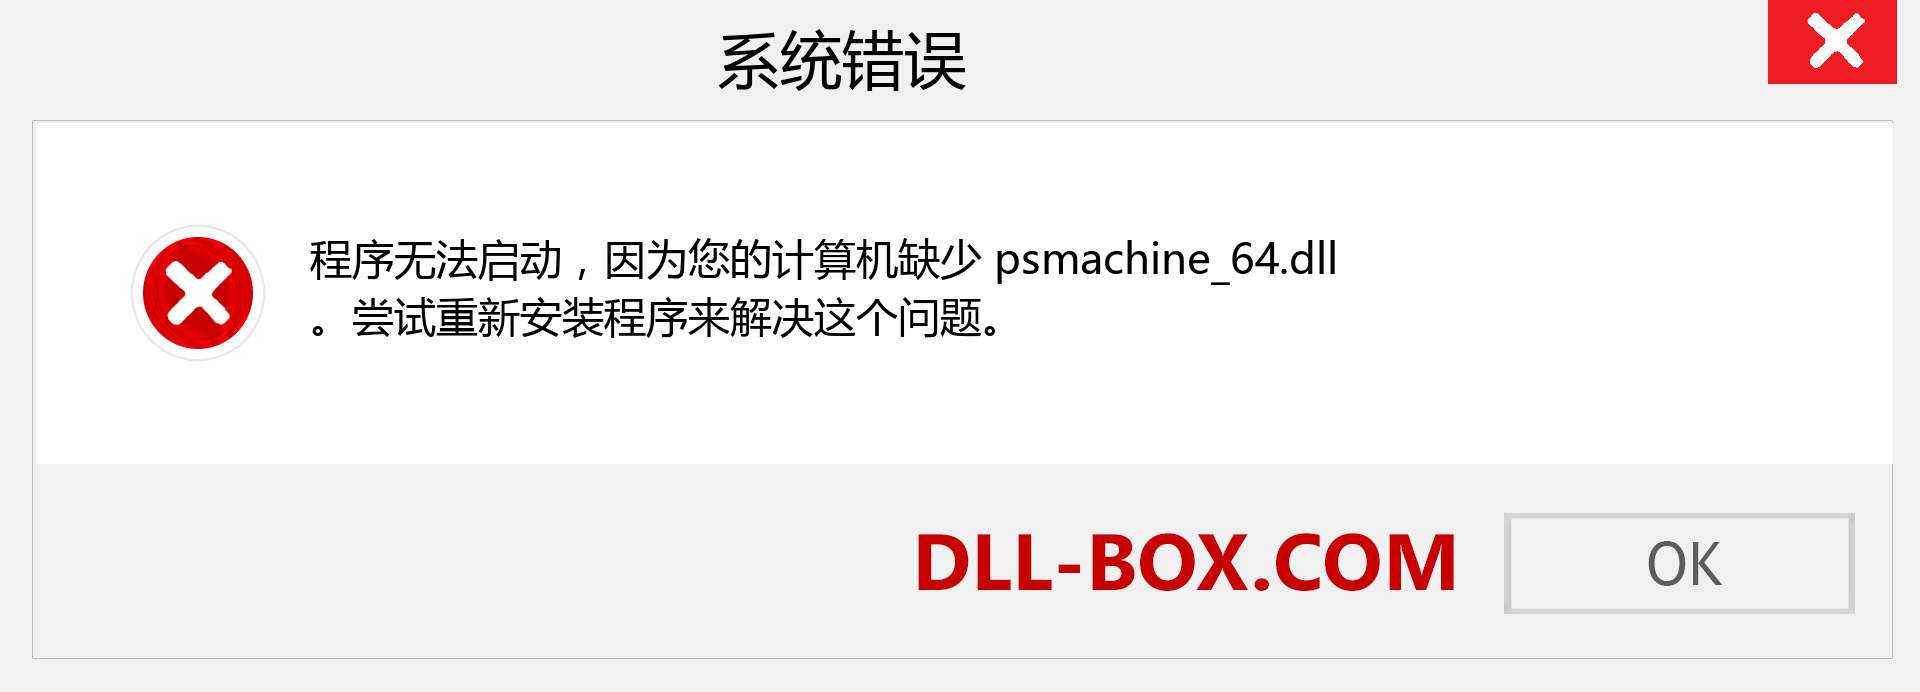 psmachine_64.dll 文件丢失？。 适用于 Windows 7、8、10 的下载 - 修复 Windows、照片、图像上的 psmachine_64 dll 丢失错误